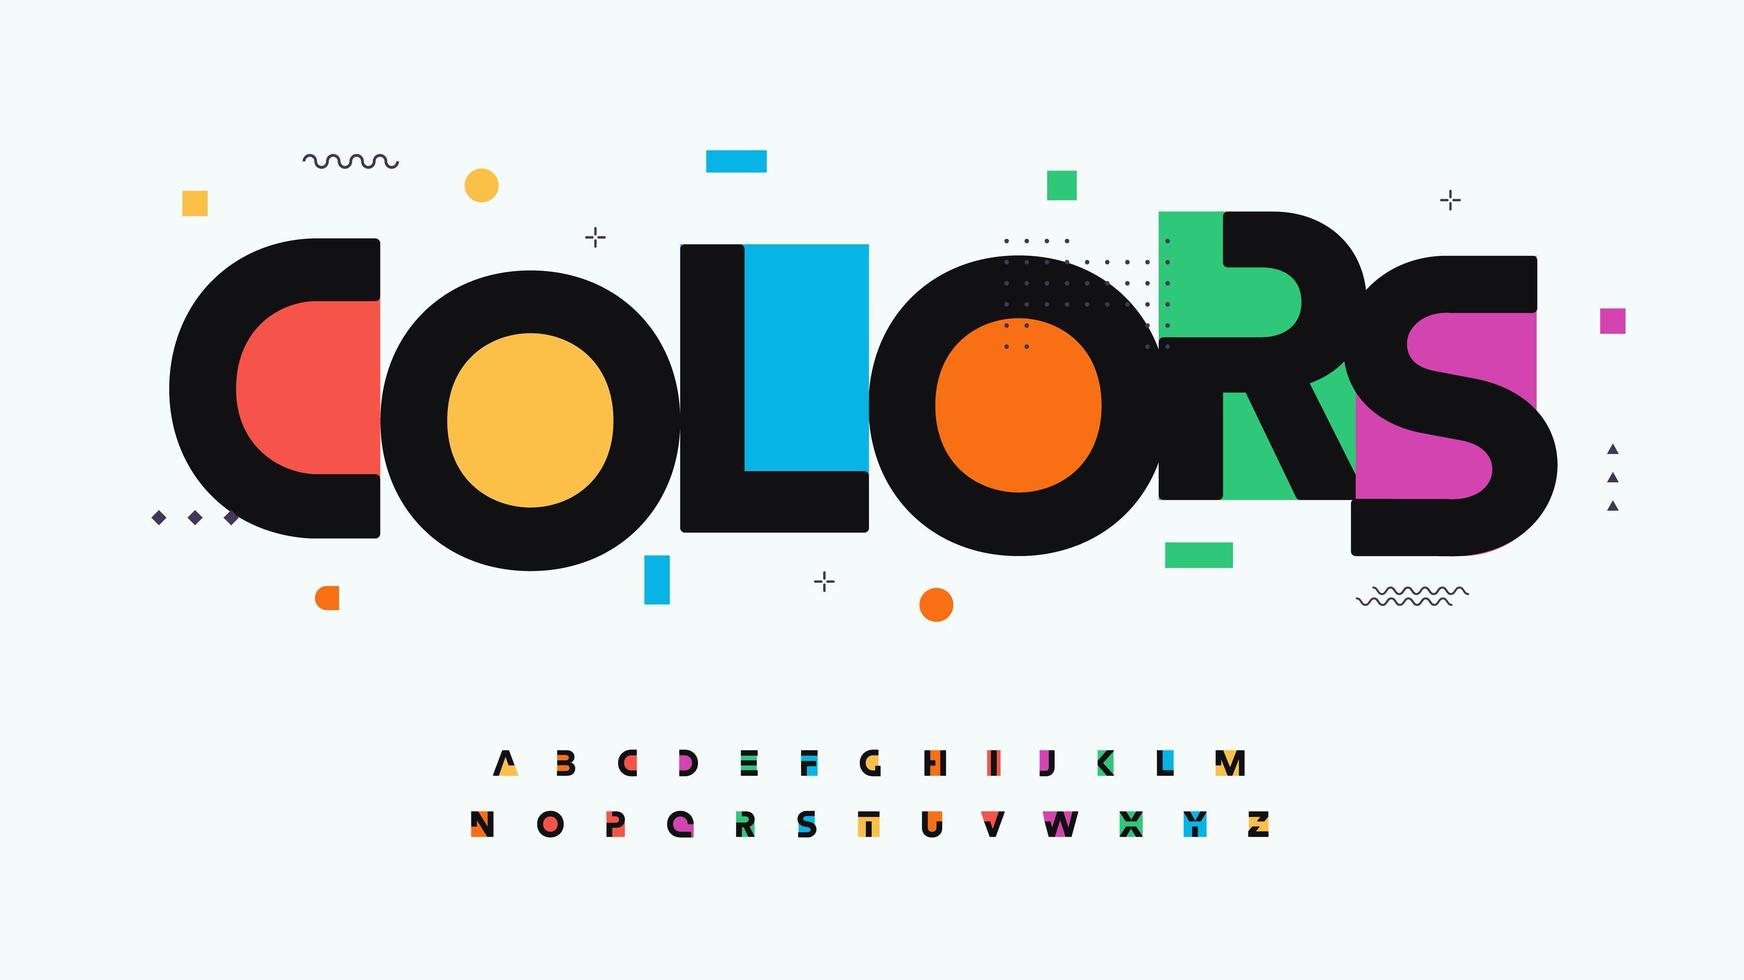 färger teckensnitt alfabetet bokstäver. modern logotyptypografi. färg kreativ konst typografisk design. festlig bokstavsuppsättning för regnbågens logotyp, rubrik, färgomslagstitel, glädjemonogram. isolerade vektor typuppsättning